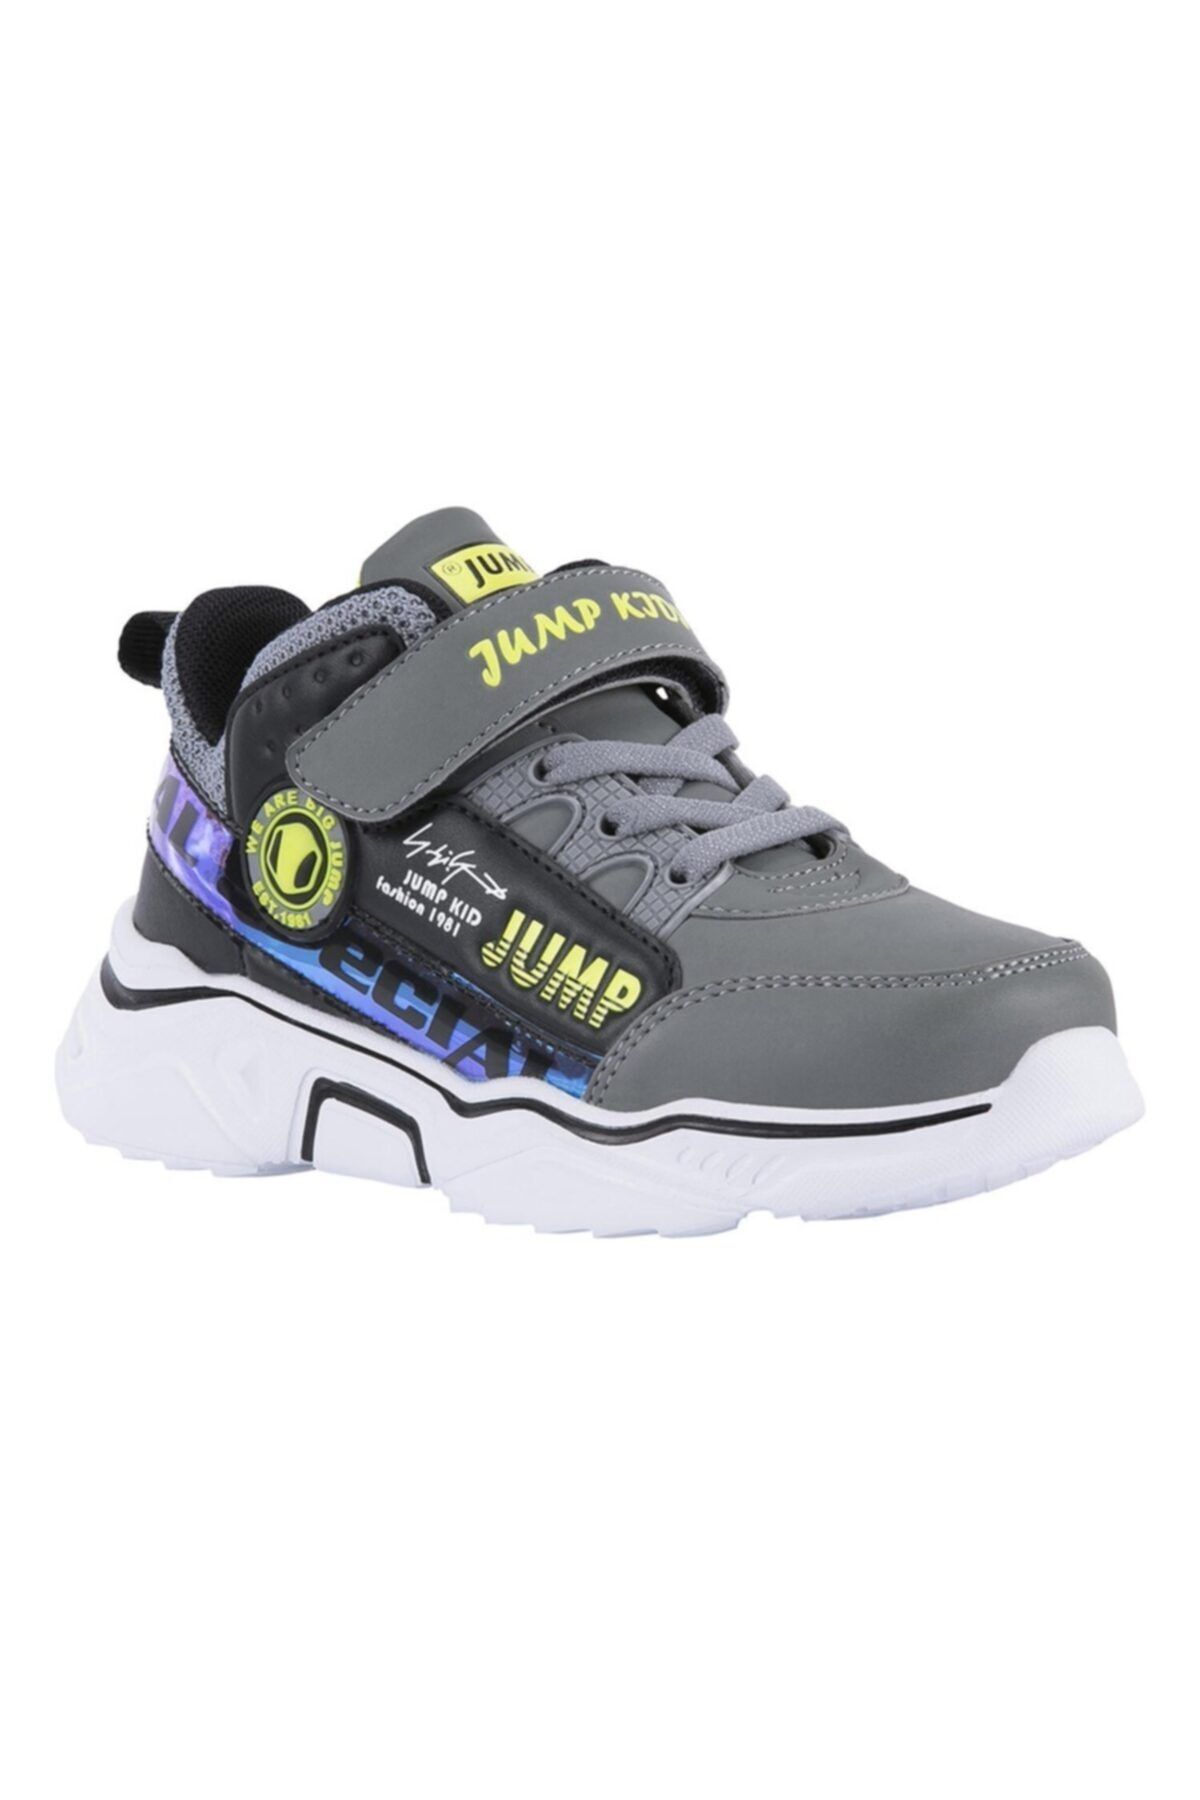 Jump 25792 Gri Siyah Neon Yeşil Uniseks Çocuk Günlük Rahat Yürüyüş Sneaker Spor Ayakkabı